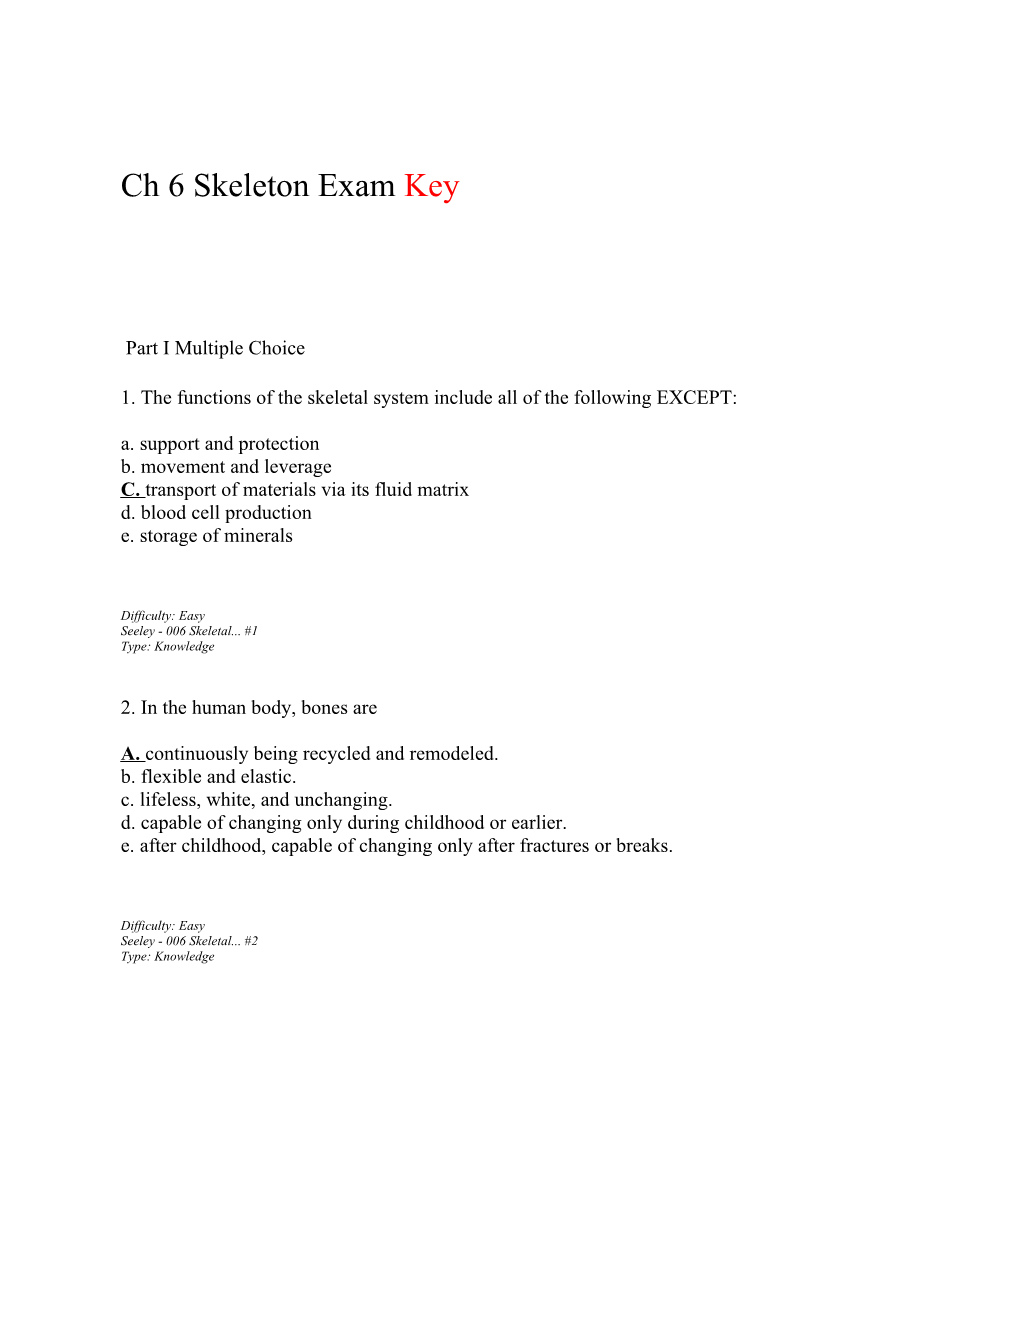 Ch 6 Skeleton Exam Key